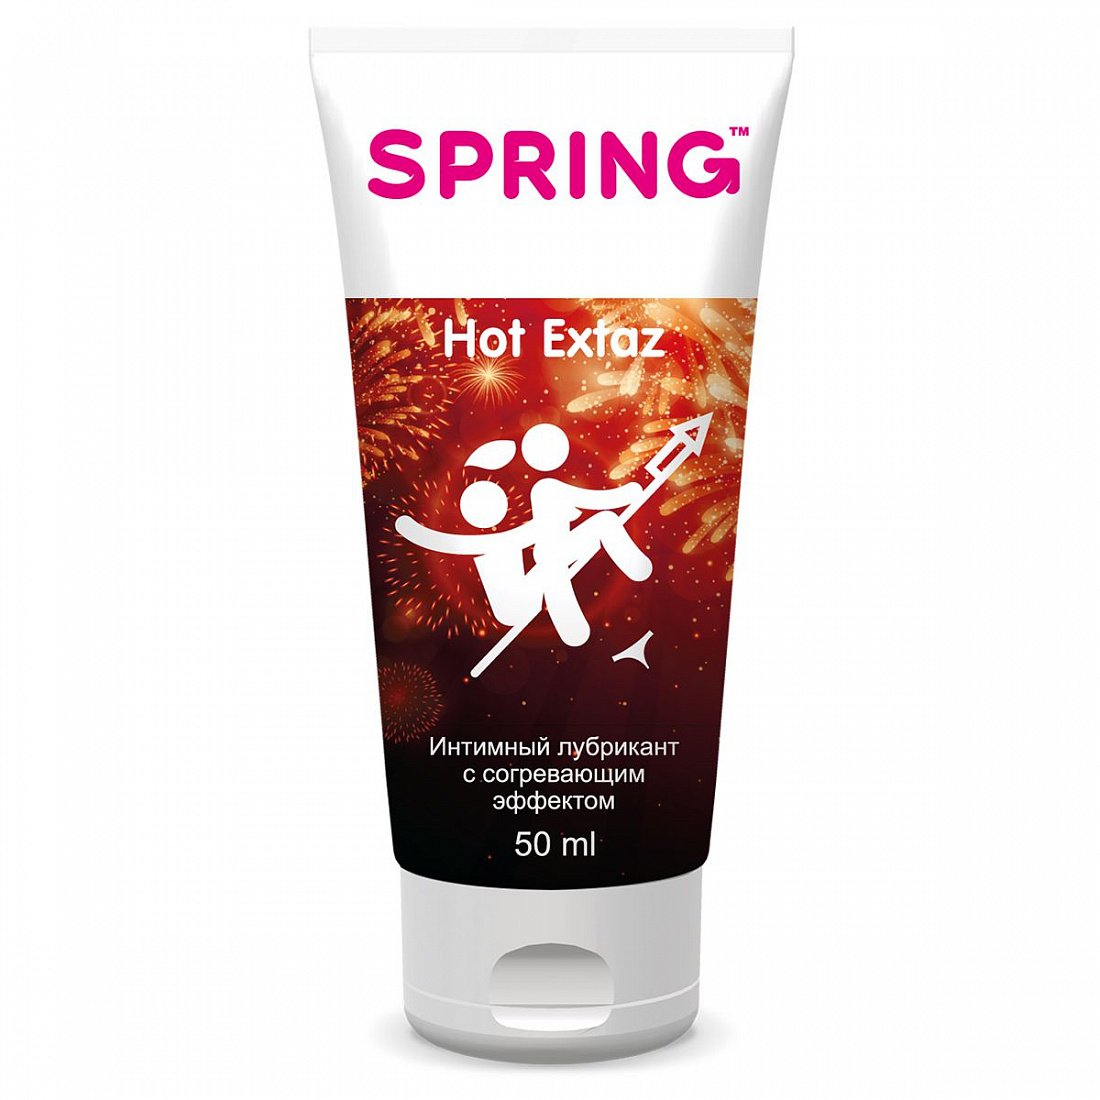    Spring Hot Extaz - 50 . SPRING SPRING HOT EXTAZ 50ml -  511 .